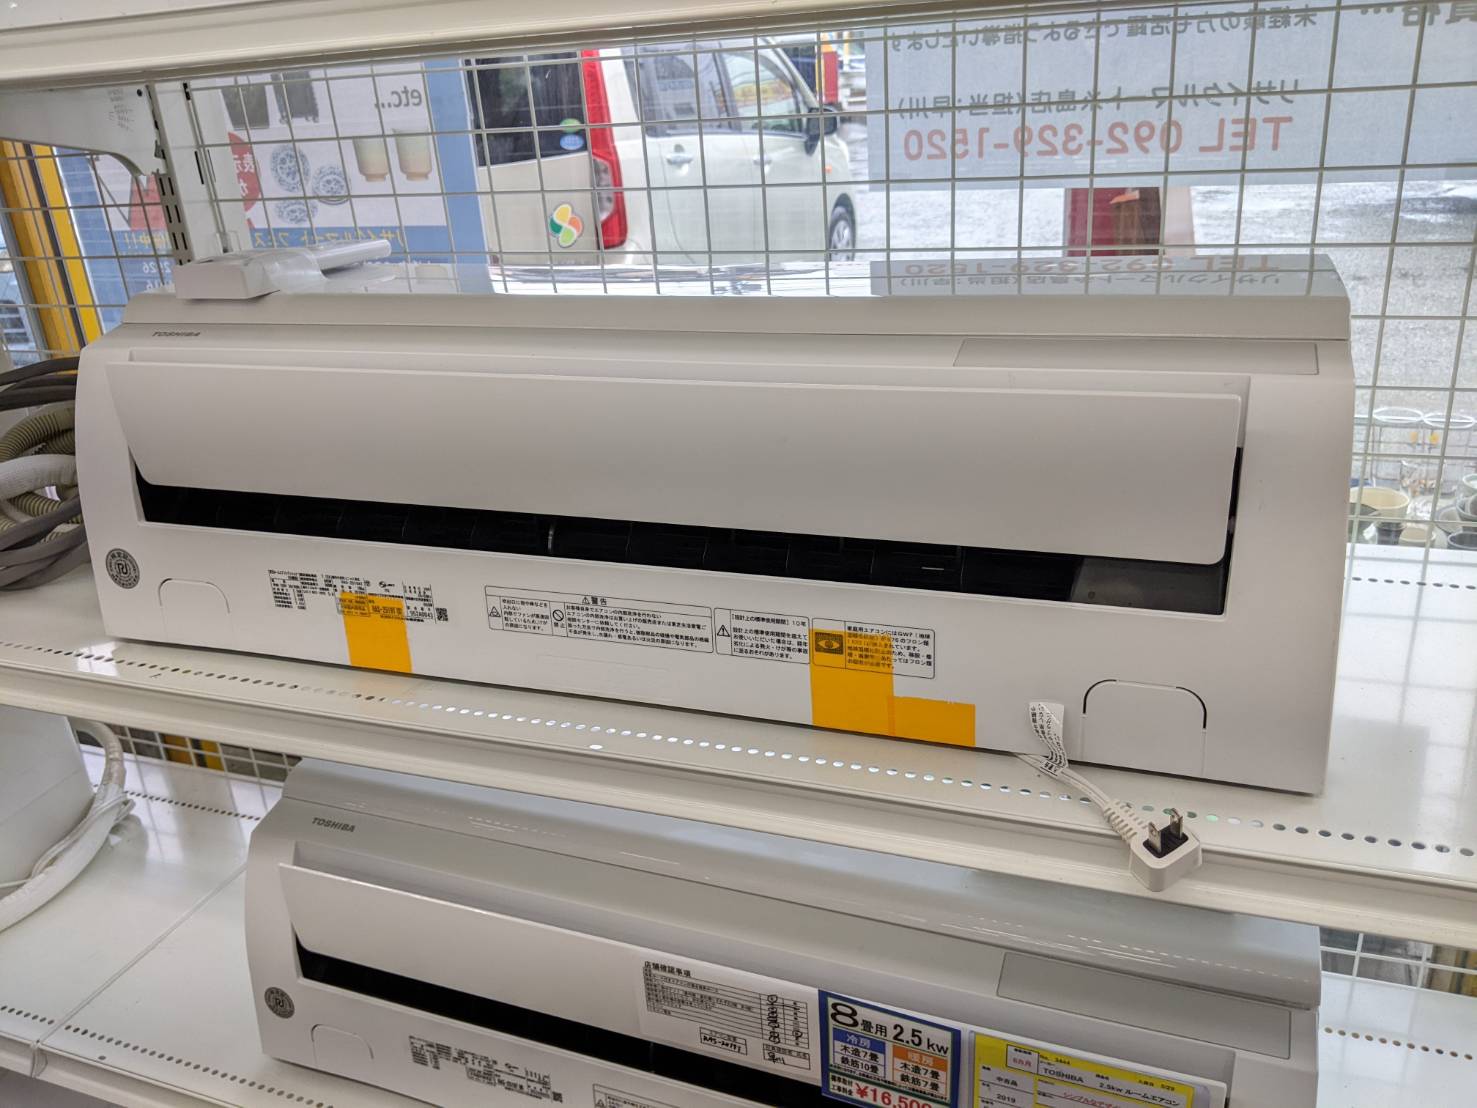 【TOSHIBA 2.5kw ルームエアコン RAS-2519T 2019年式 東芝 クーラー 空調】を買取いたしました! - リサイクルマートは現在冷蔵庫の買取、家具の買取強化中です！お気軽にお問い合わせください。